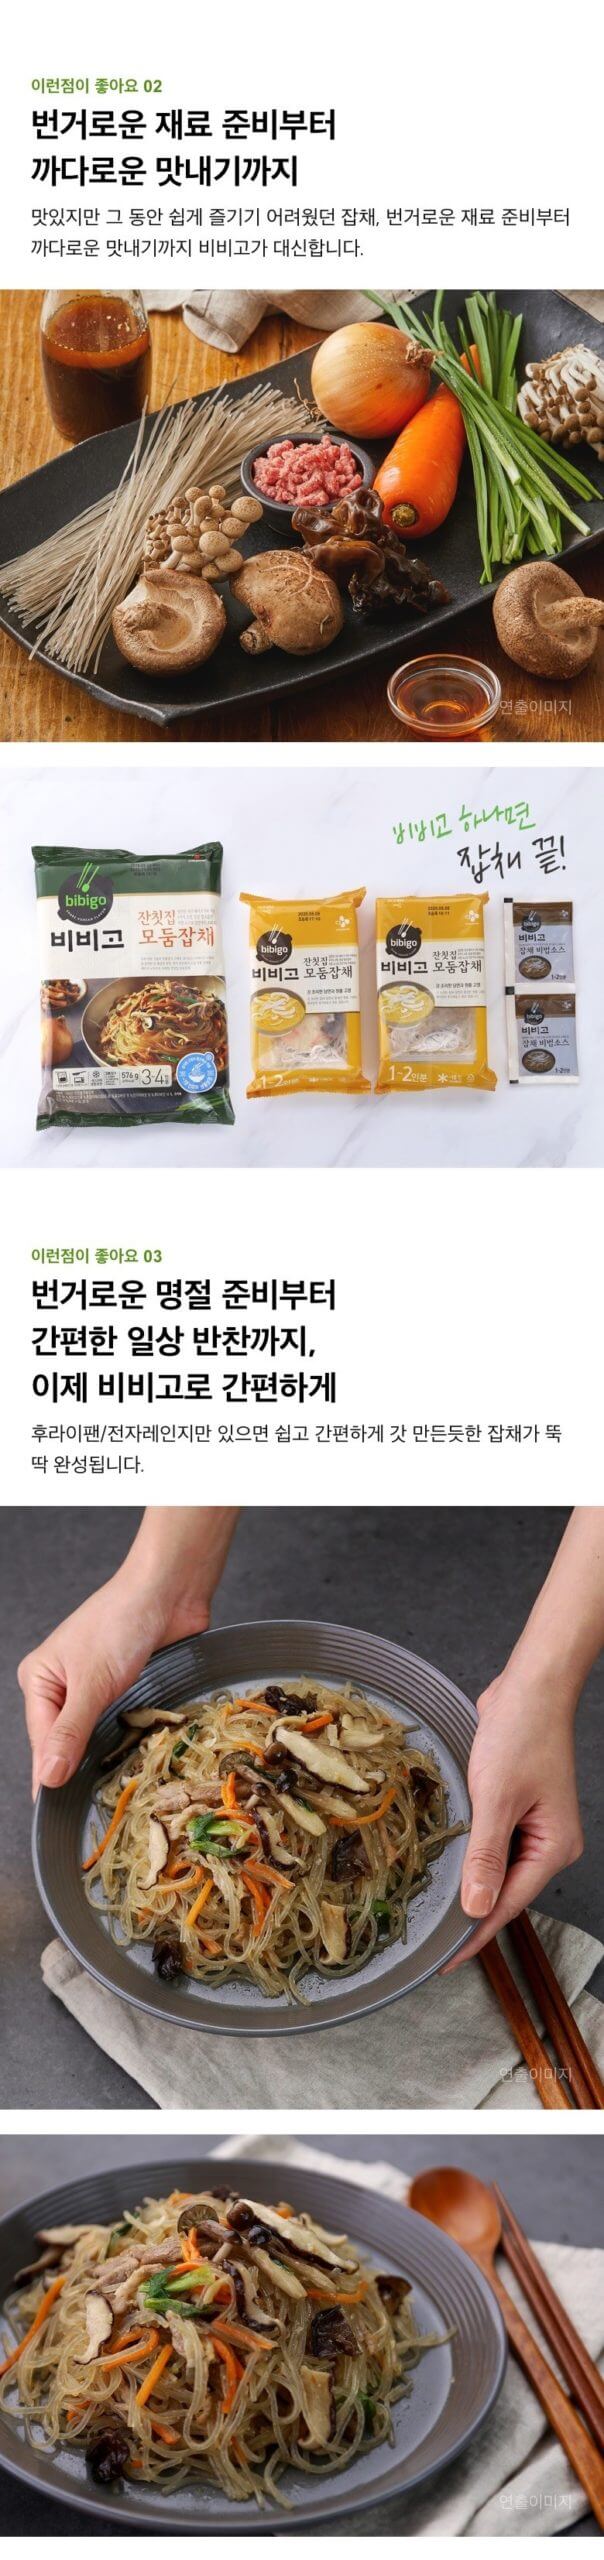 韓國食品-[CJ] Bibigo 雜粉絲 644g